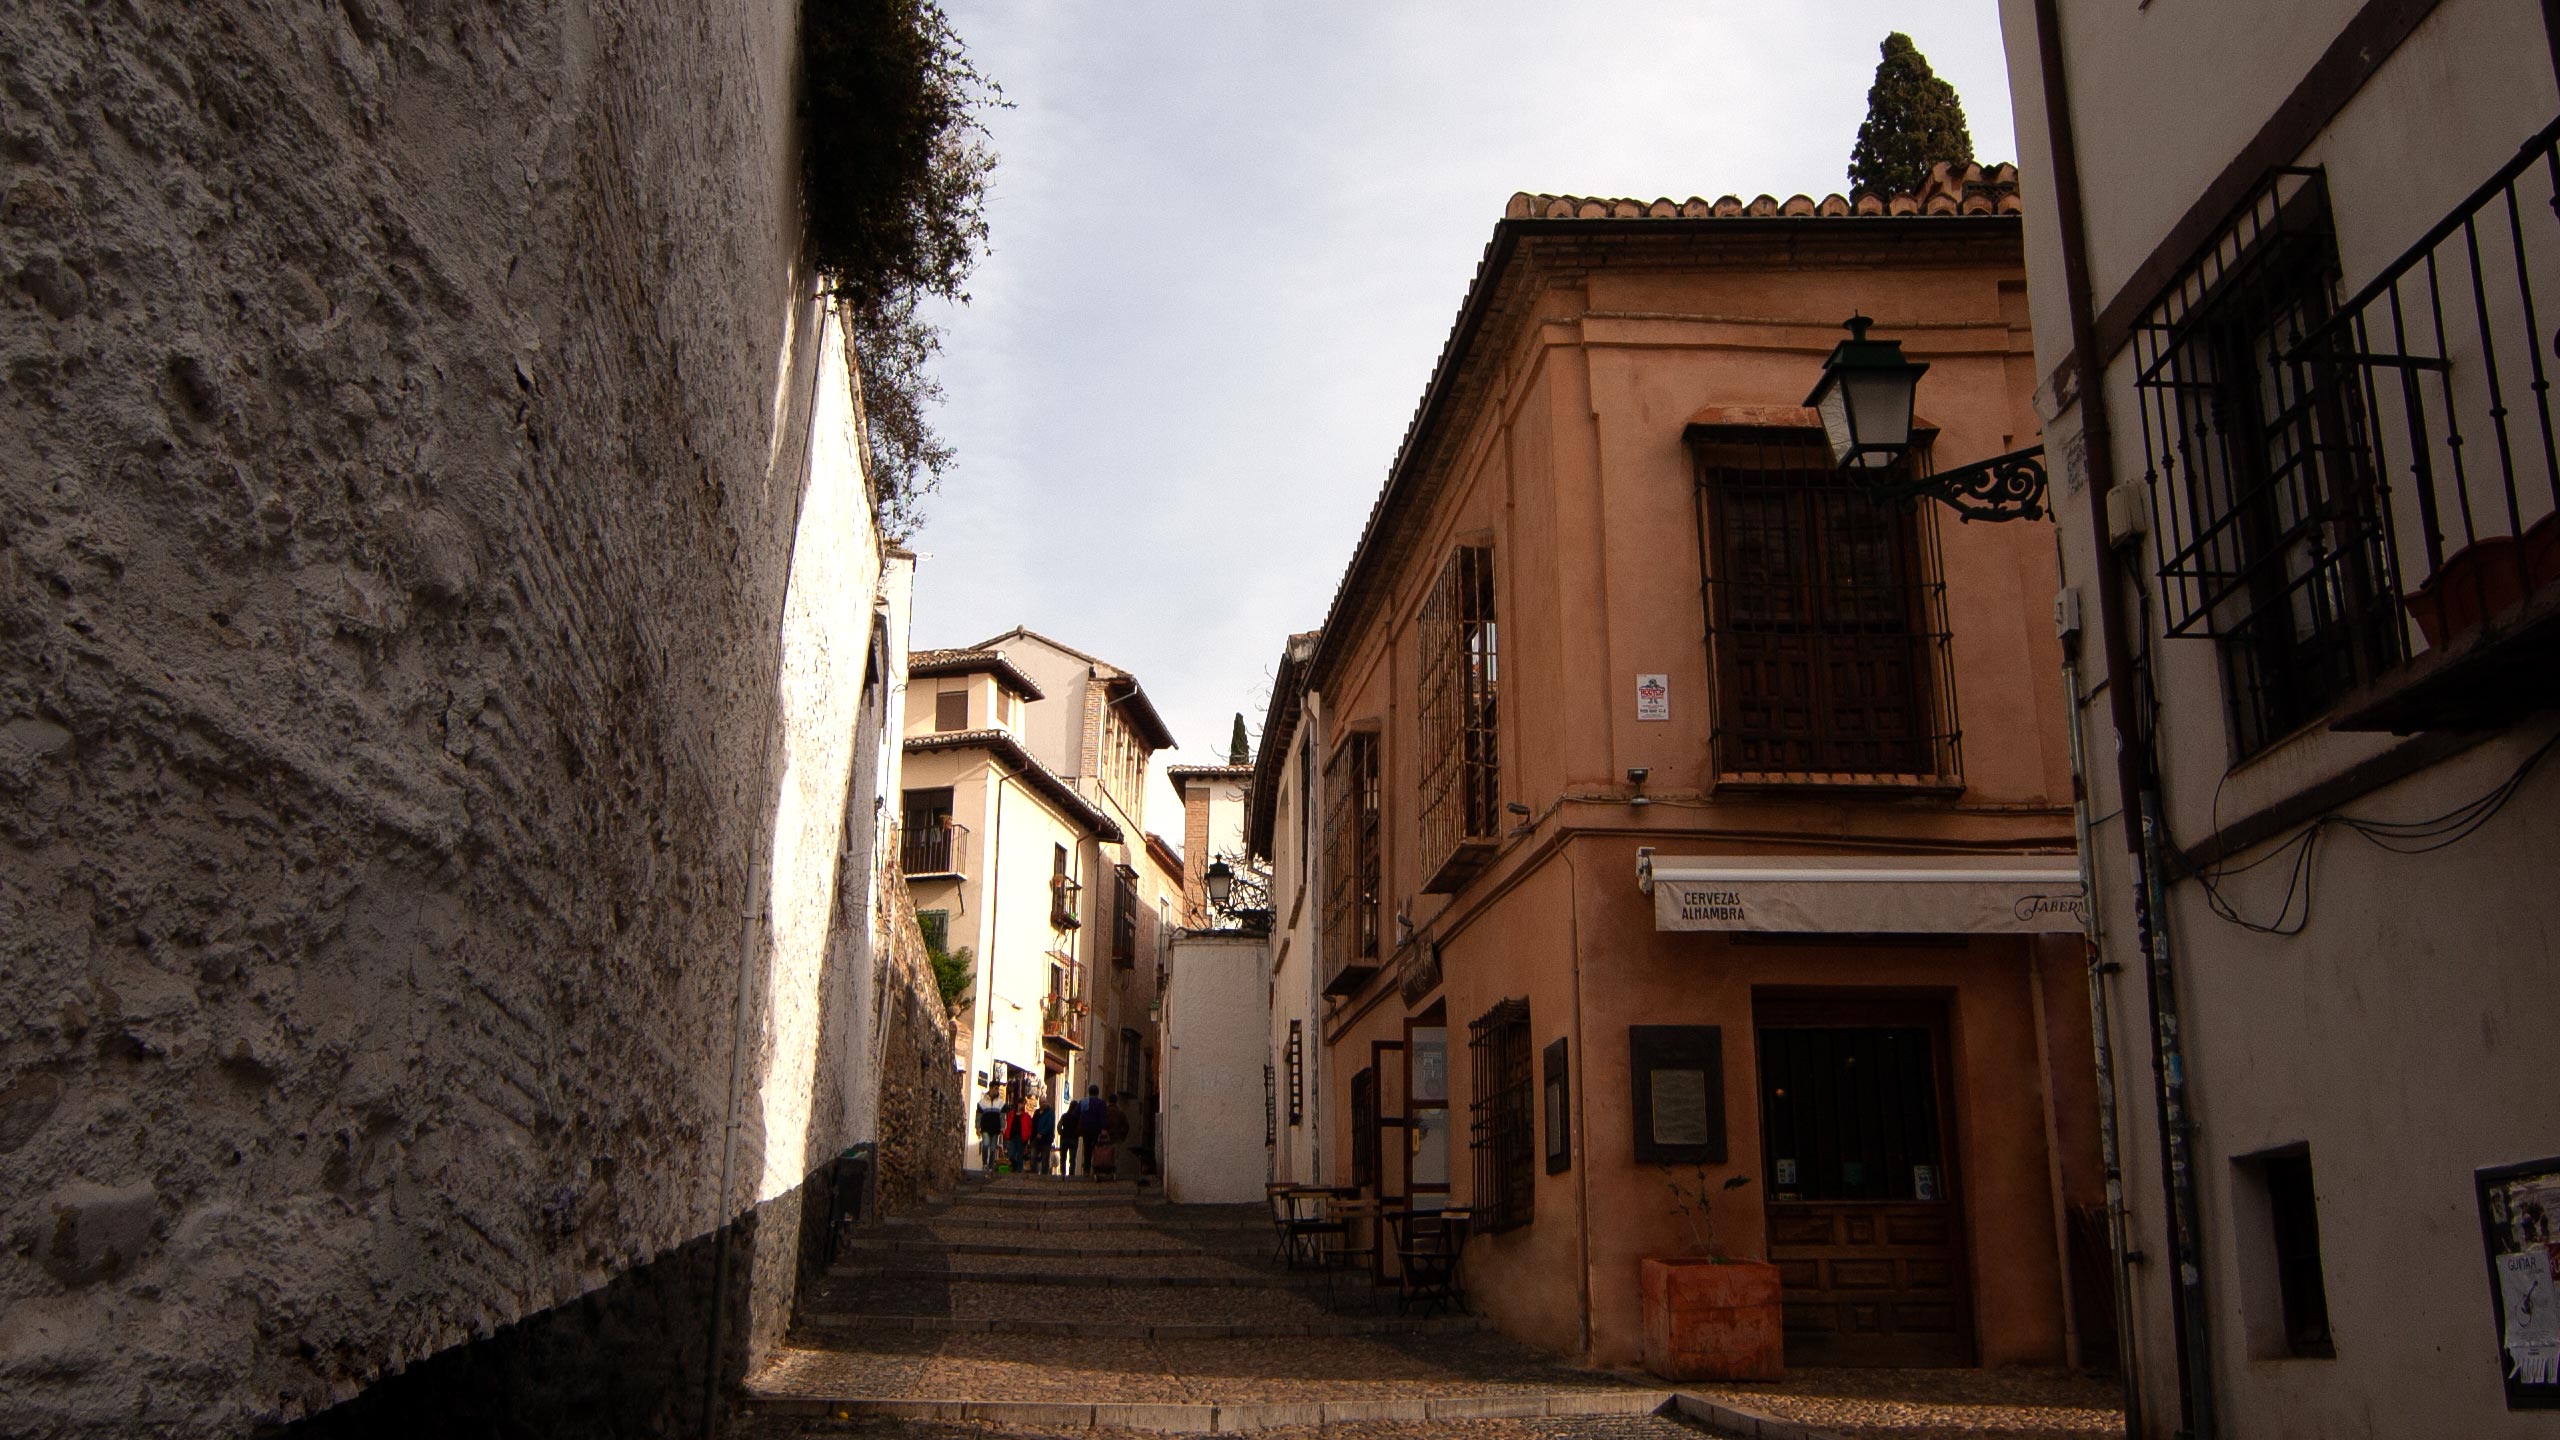 Particulier - Conde de Cabra Palace, Alhambra gekleurde schuurwerk gevel